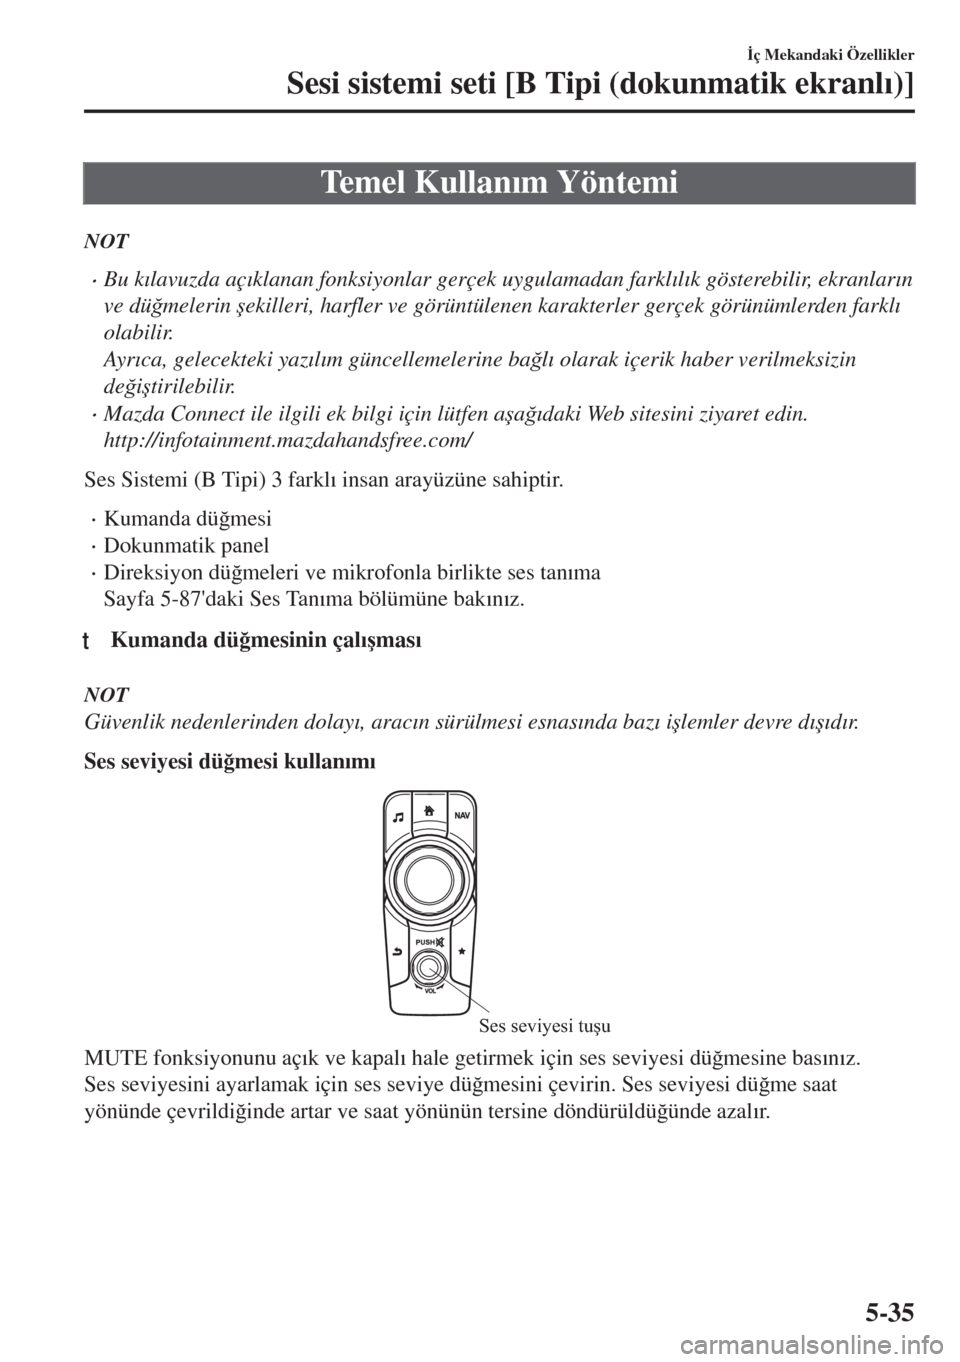 MAZDA MODEL MX-5 2018  Kullanım Kılavuzu (in Turkish) Temel Kullan�Õm Yöntemi
NOT
•Bu k�Õlavuzda aç�Õklanan fonksiyonlar gerçek uygulamadan farkl�Õl�Õk gösterebilir, ekranlar�Õn
ve dü�÷melerin �úekilleri, harfler ve görüntülenen karakte